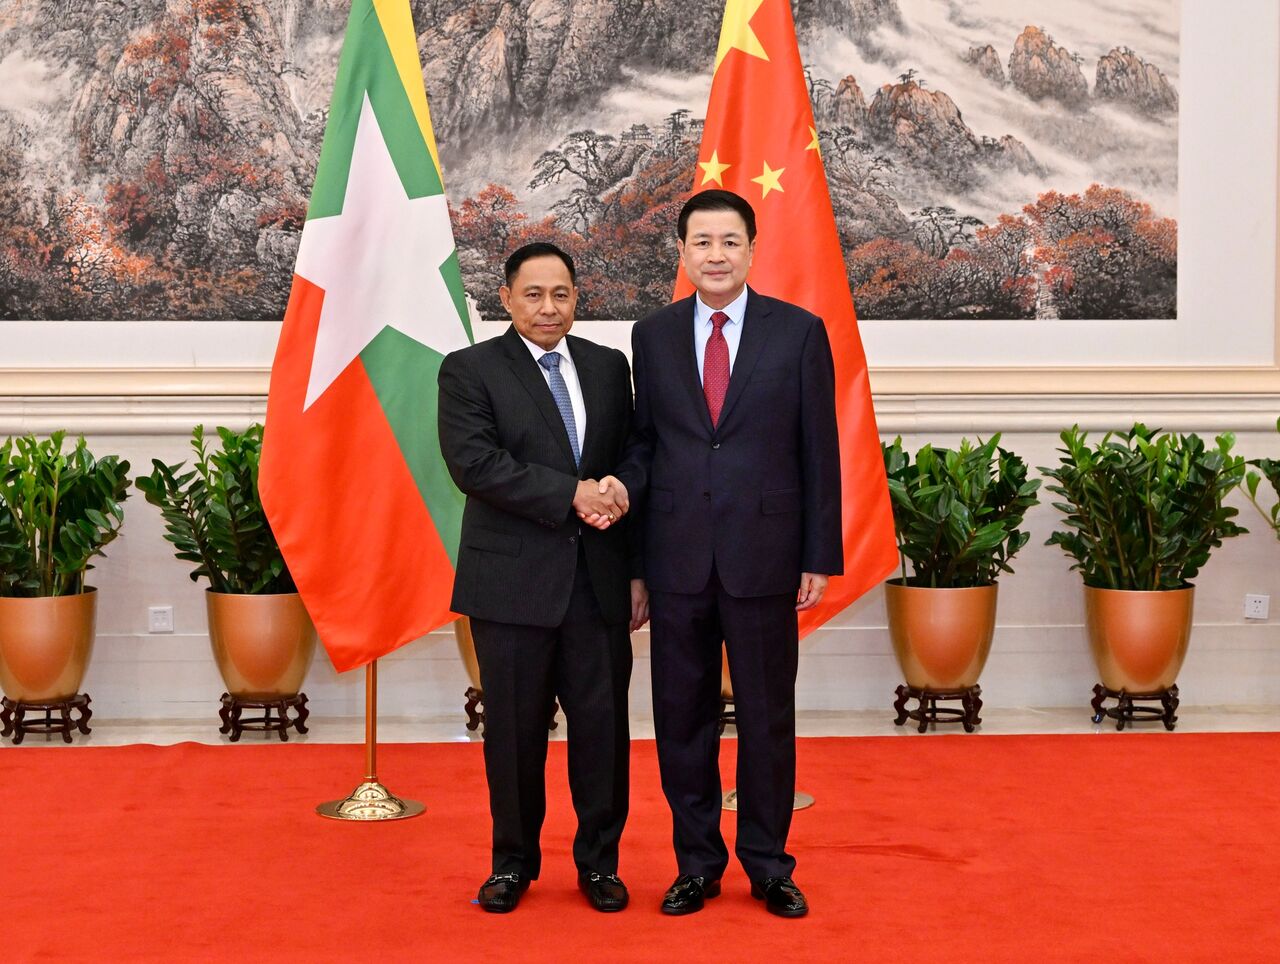 همکاری چین و حکومت نظامی میانمار برای تامین امنیت مرزی دو کشور